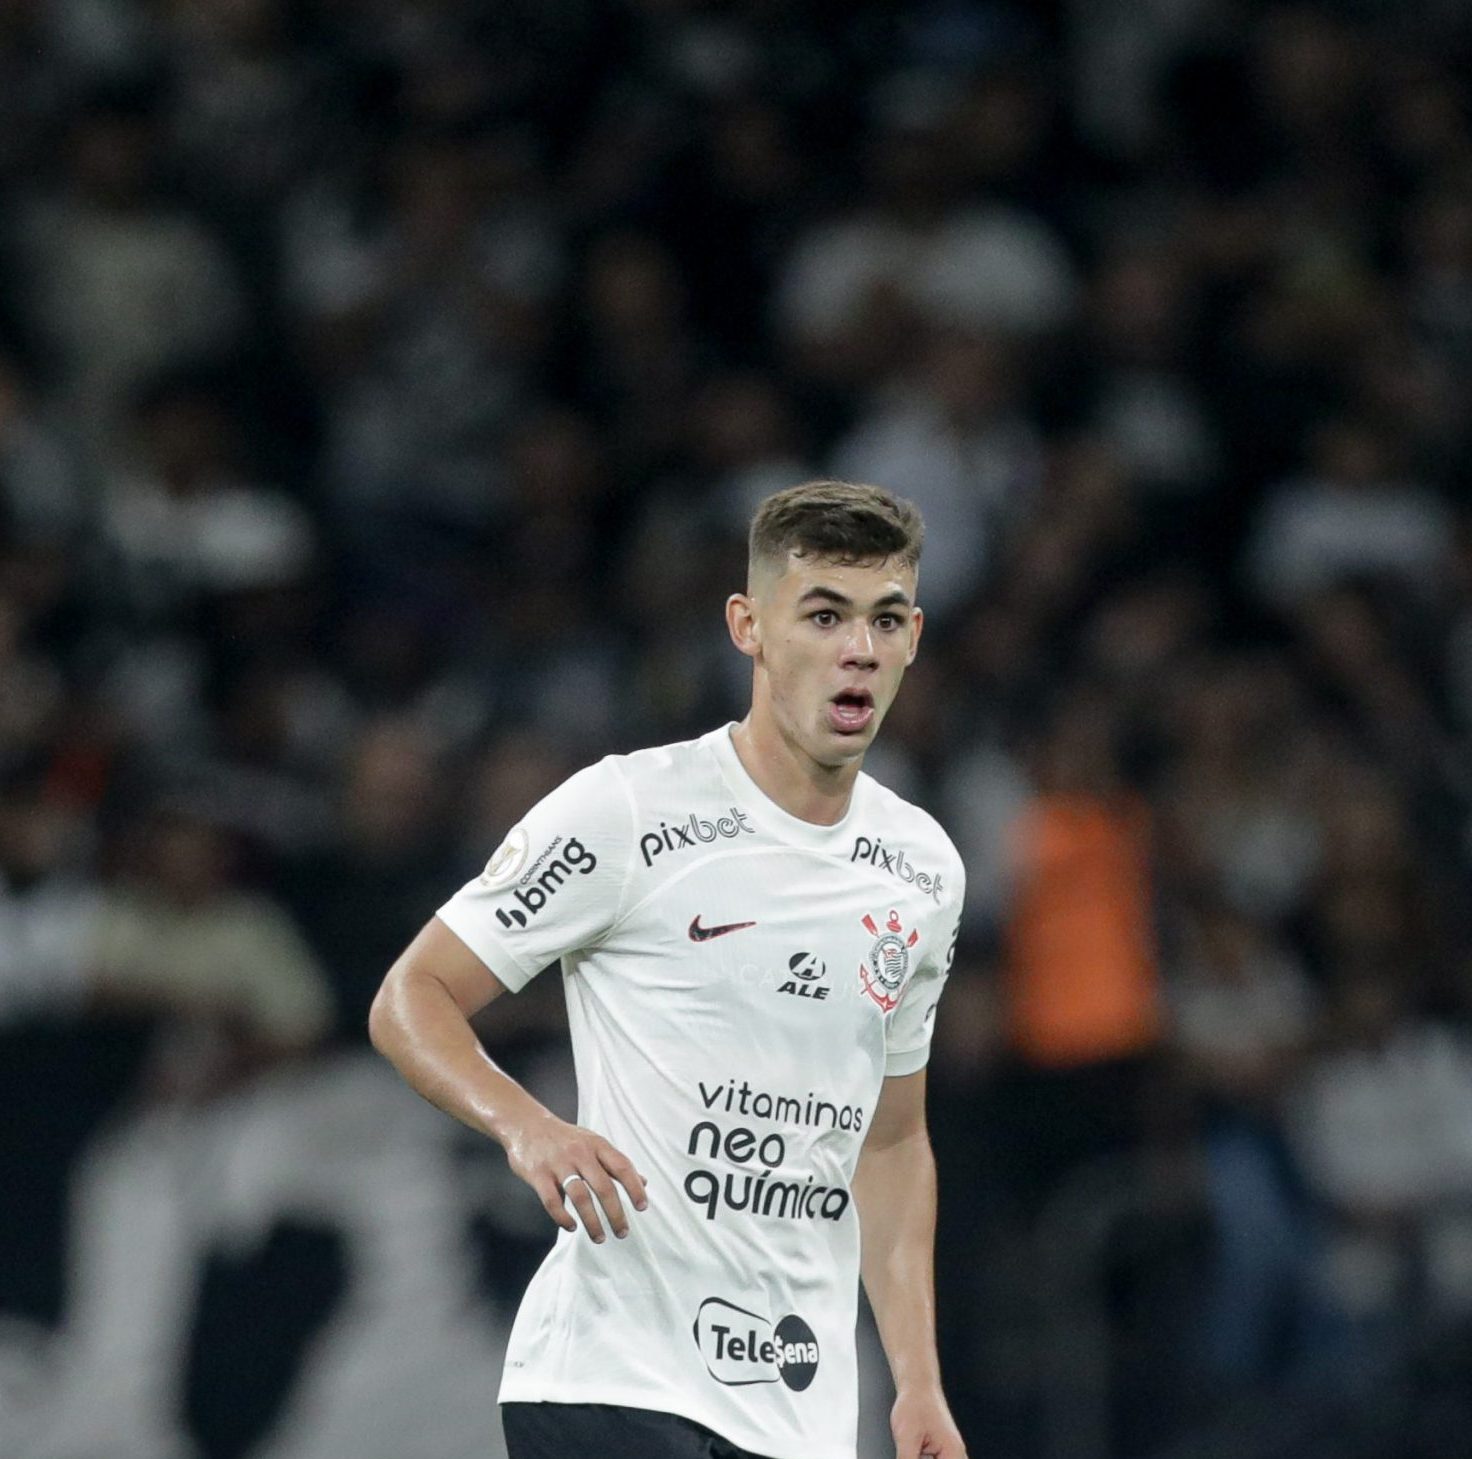 Wesley supera Moscardo com melhor contrato entre jovens do Corinthians